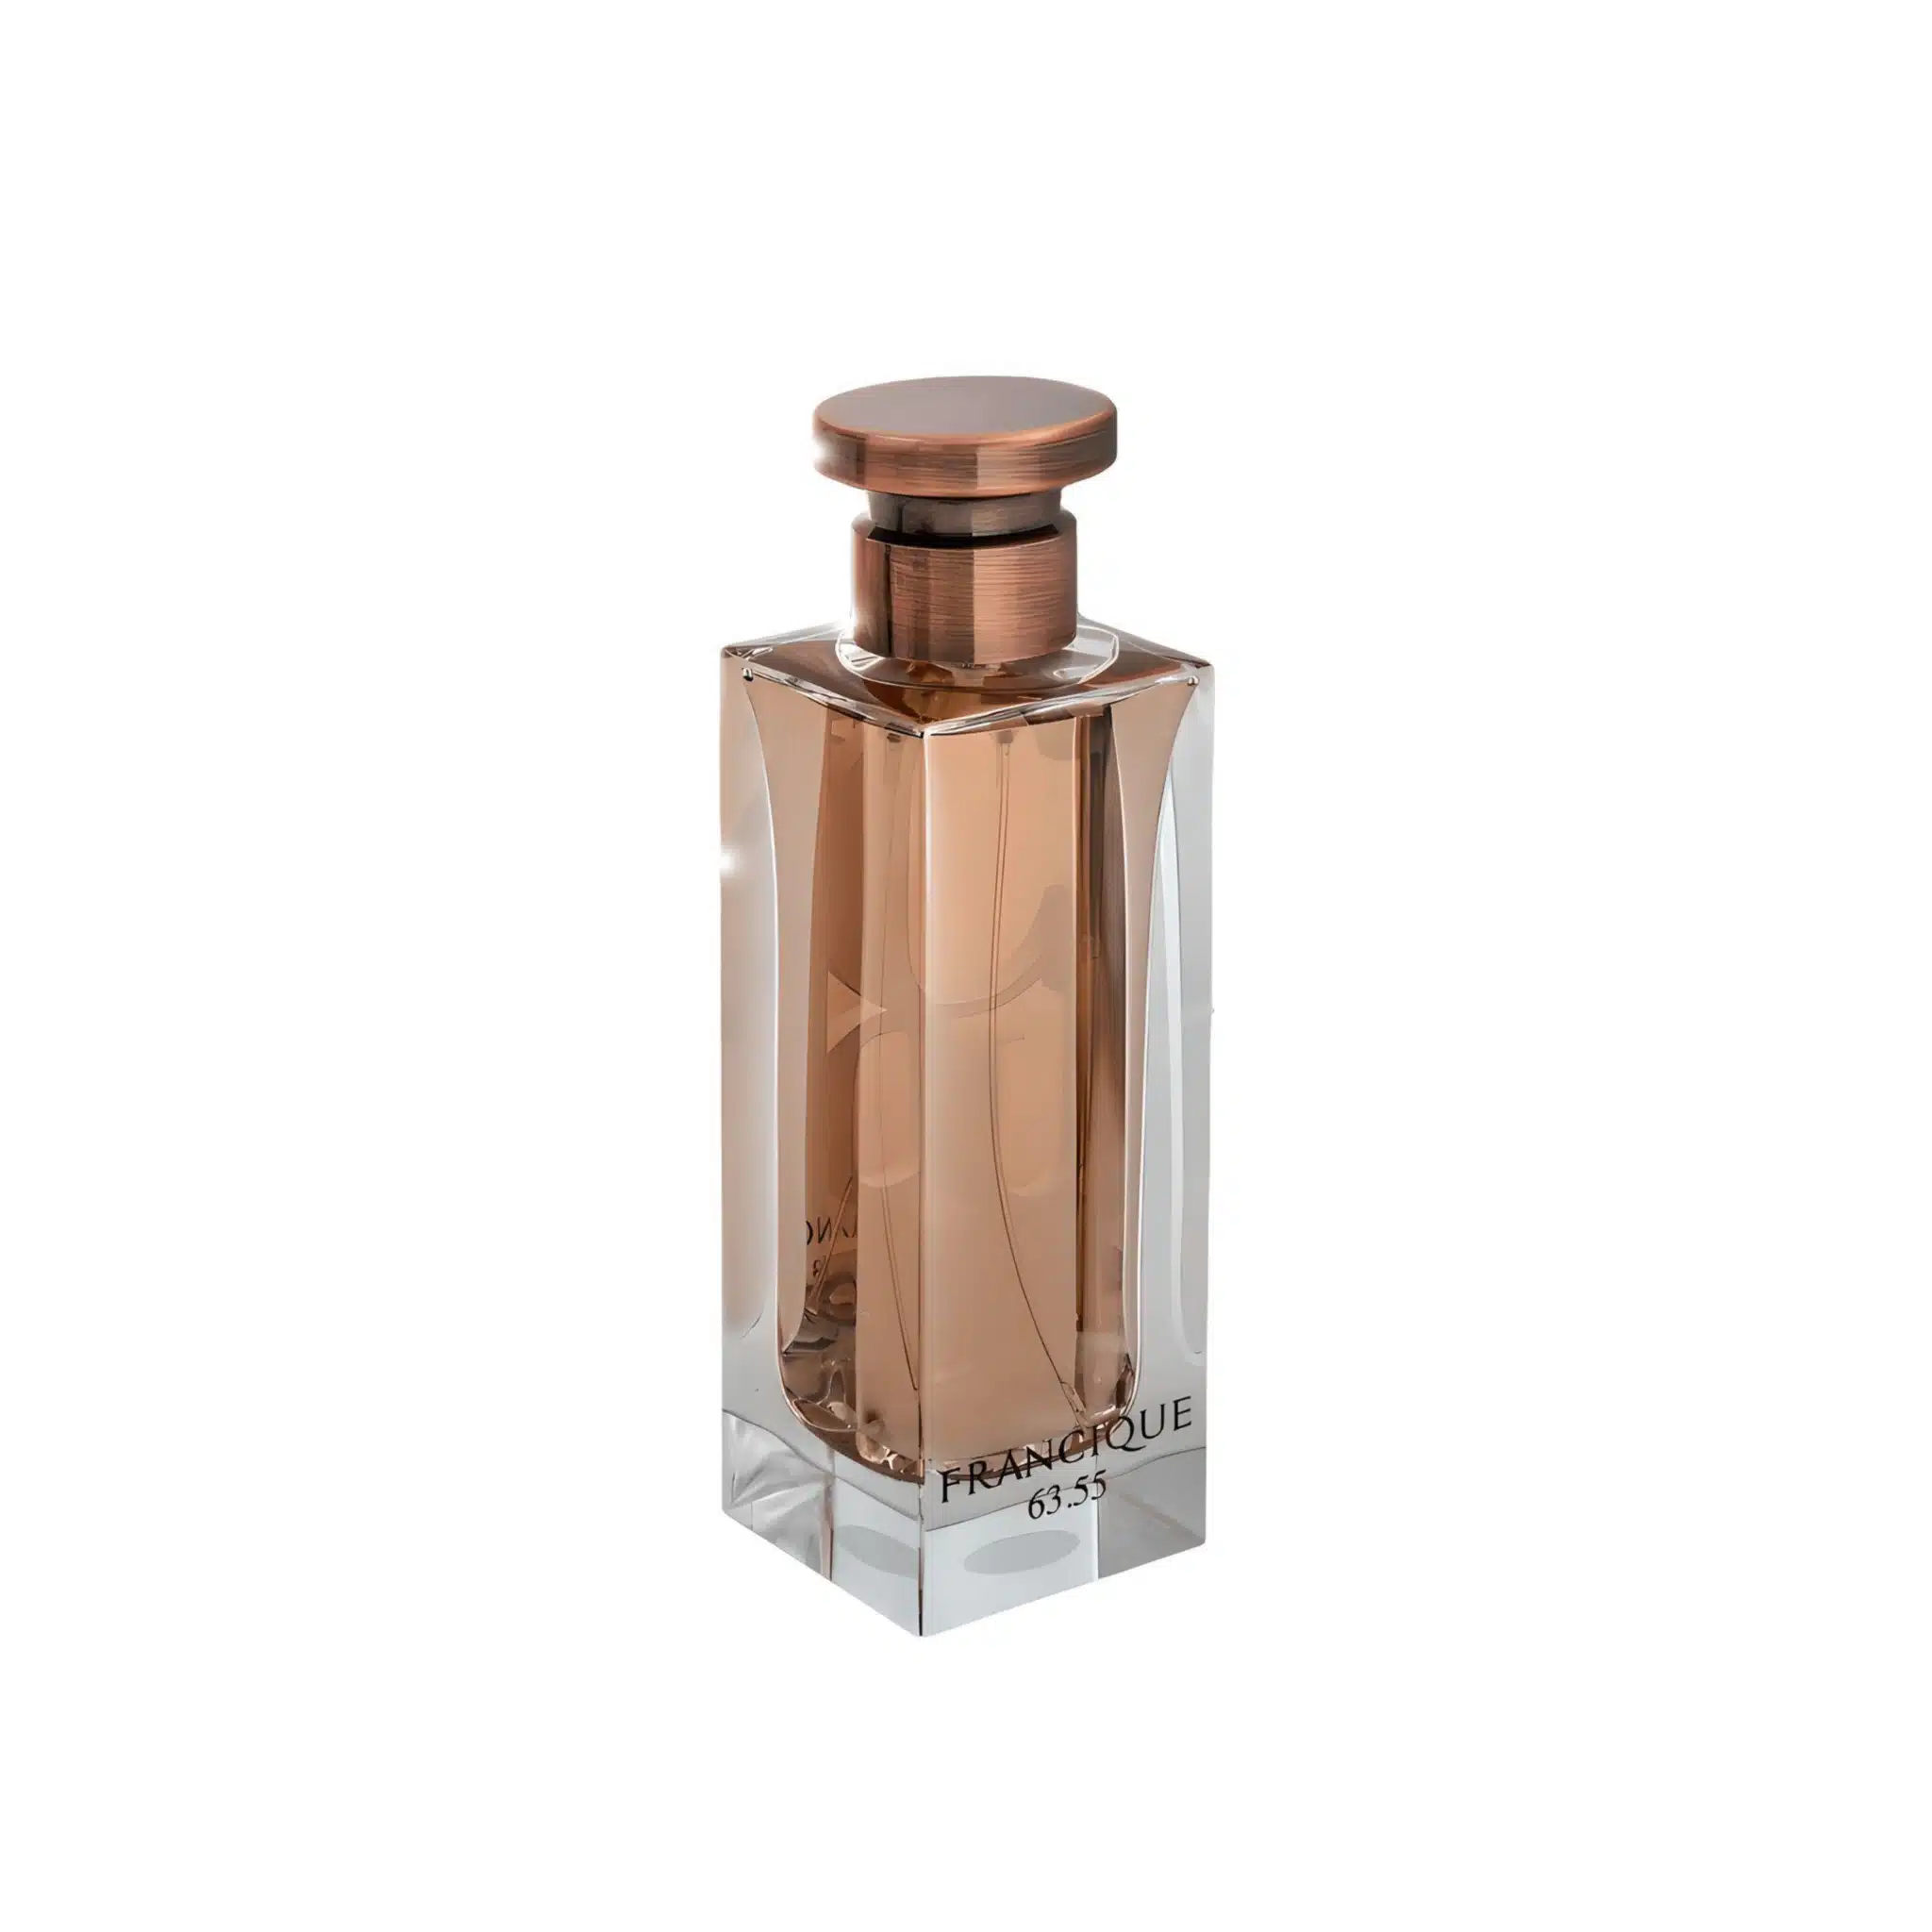 Francique 63.55 Perfume Eau De Parfum 100Ml By Fa Paris (Fragrance World) (Inspired By Bdk Gris Charnel)